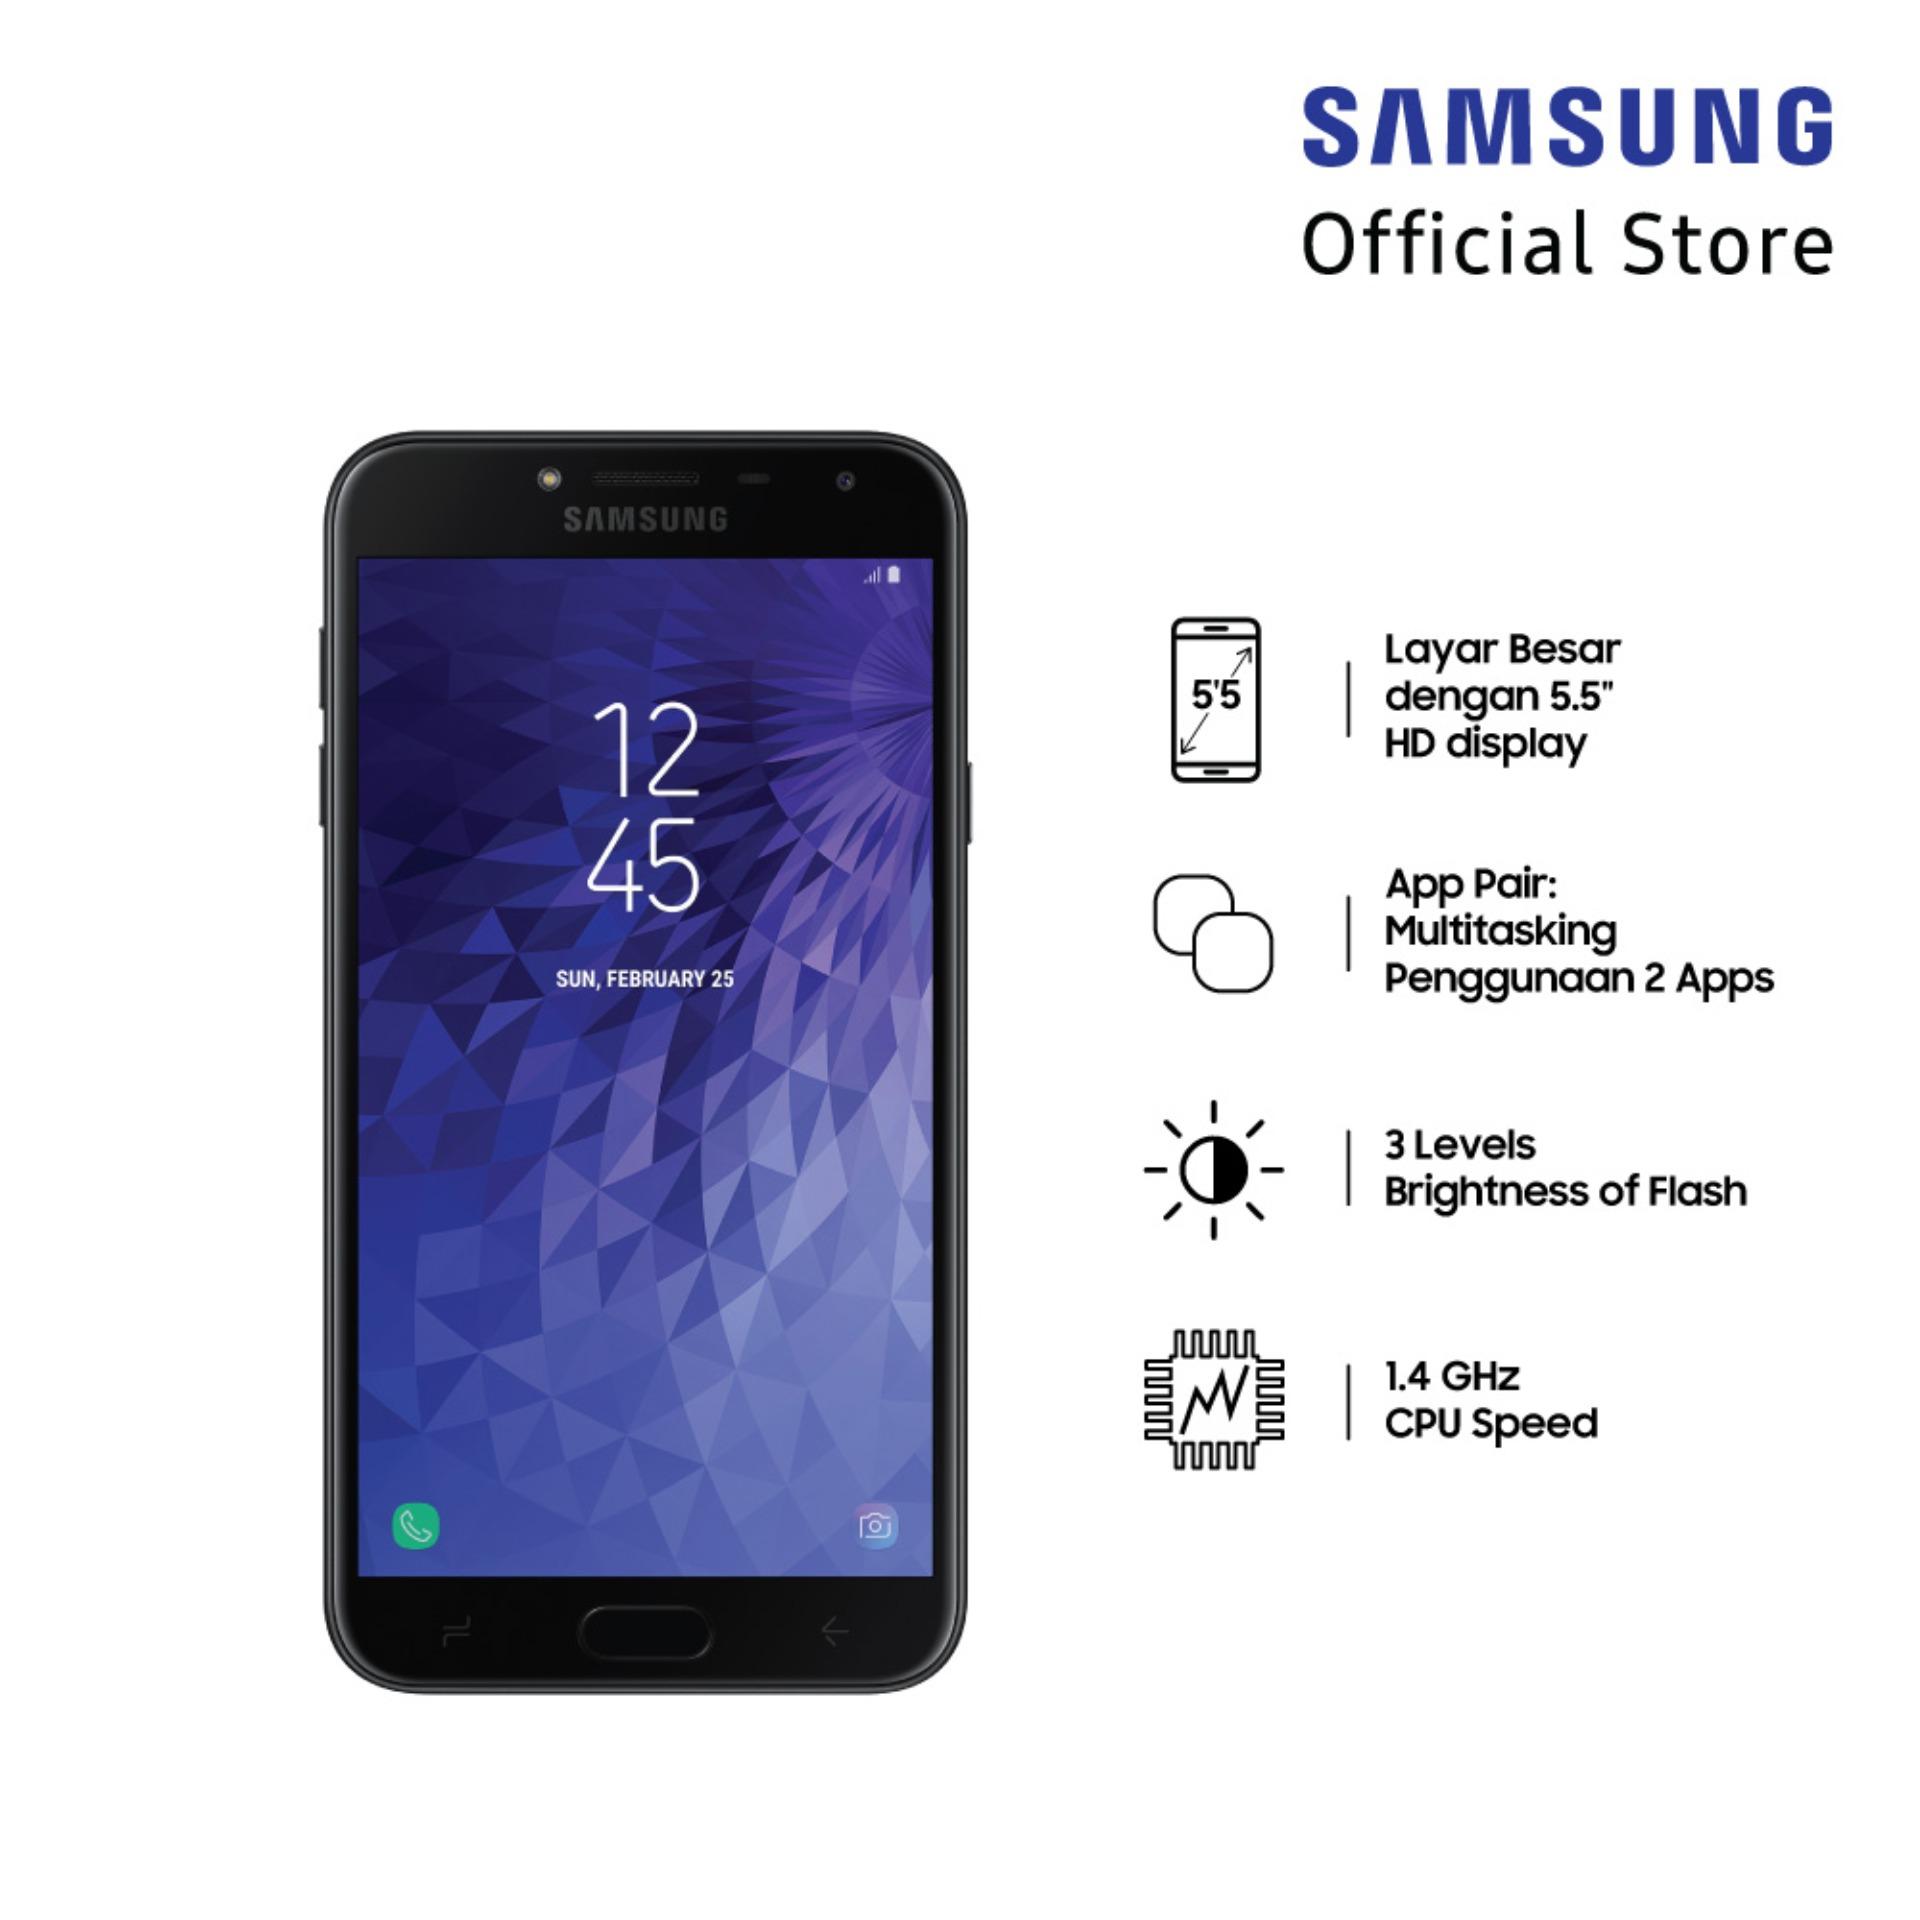 Samsung Galaxy J4 SM-J400F - Black 2/16 GB